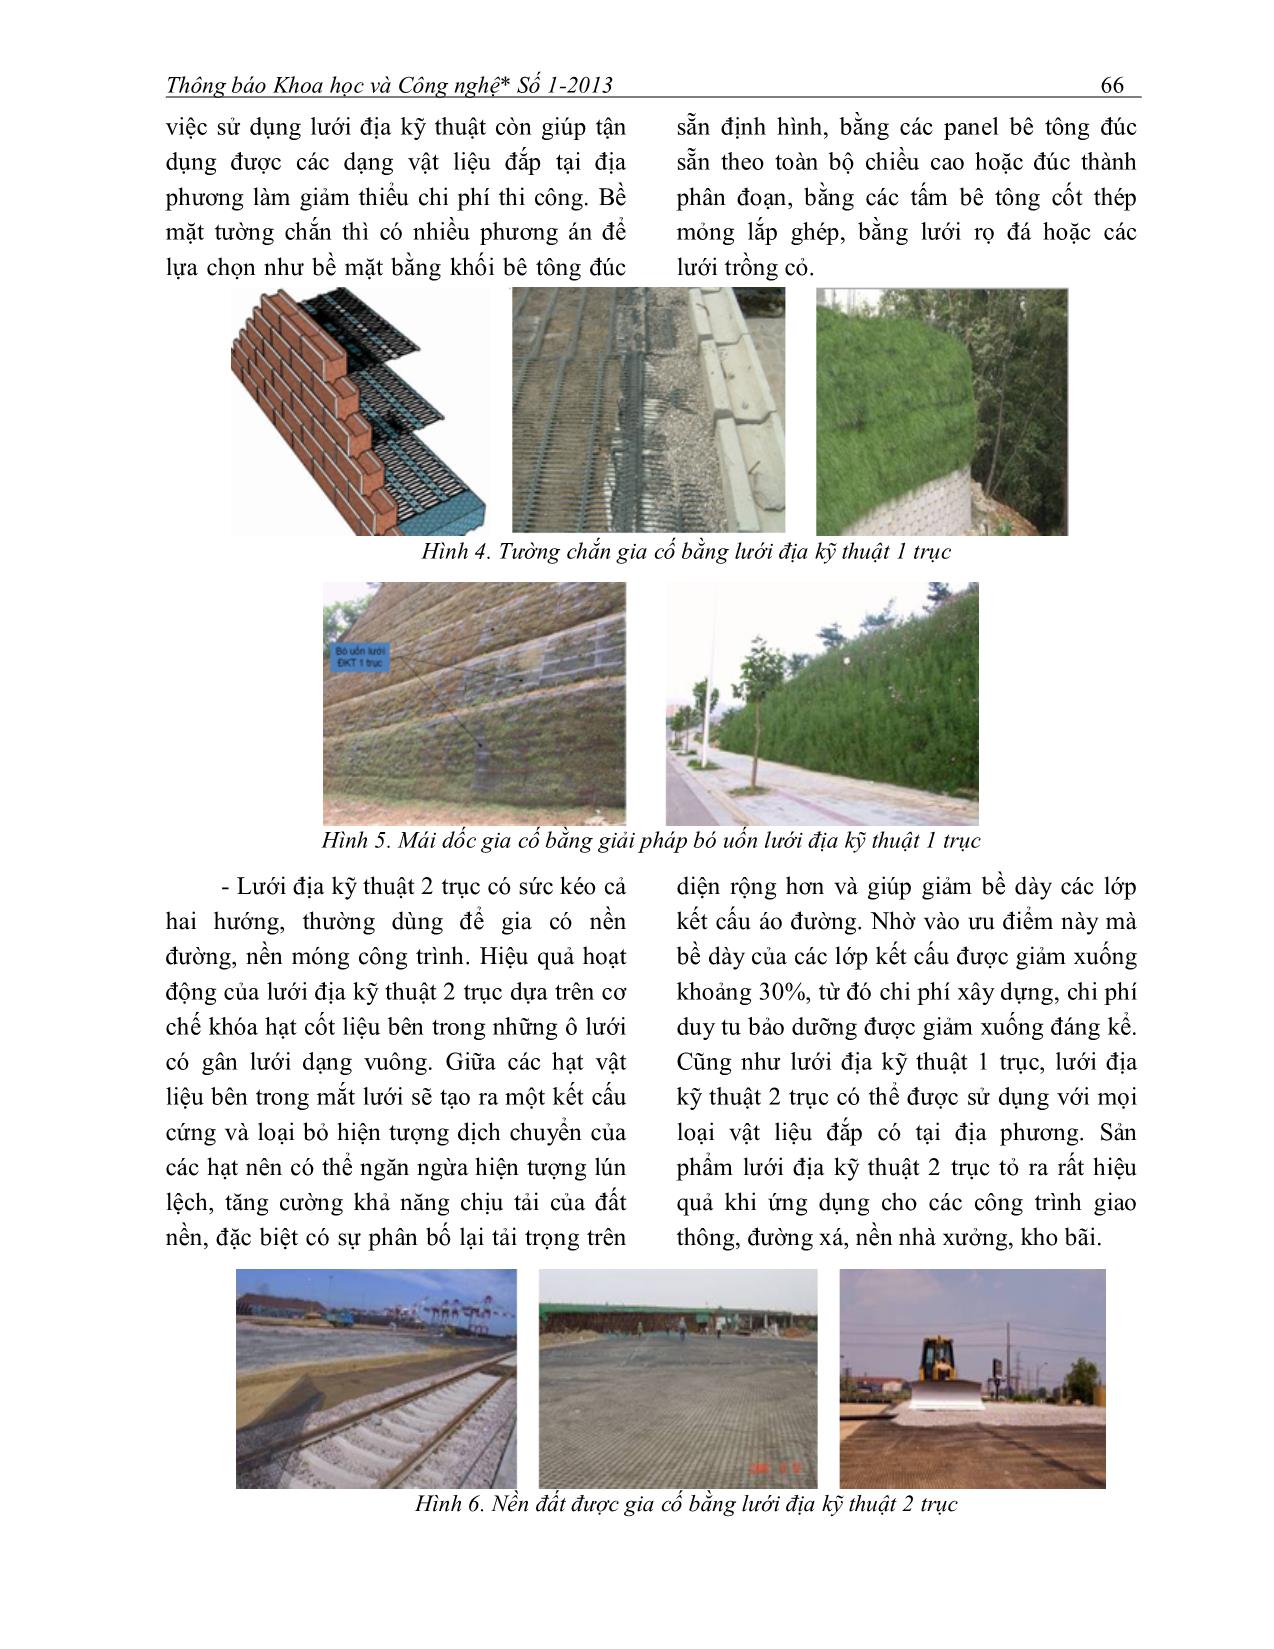 Thiết kế tường chắn đất có cốt bằng lưới địa kỹ thuật trang 2